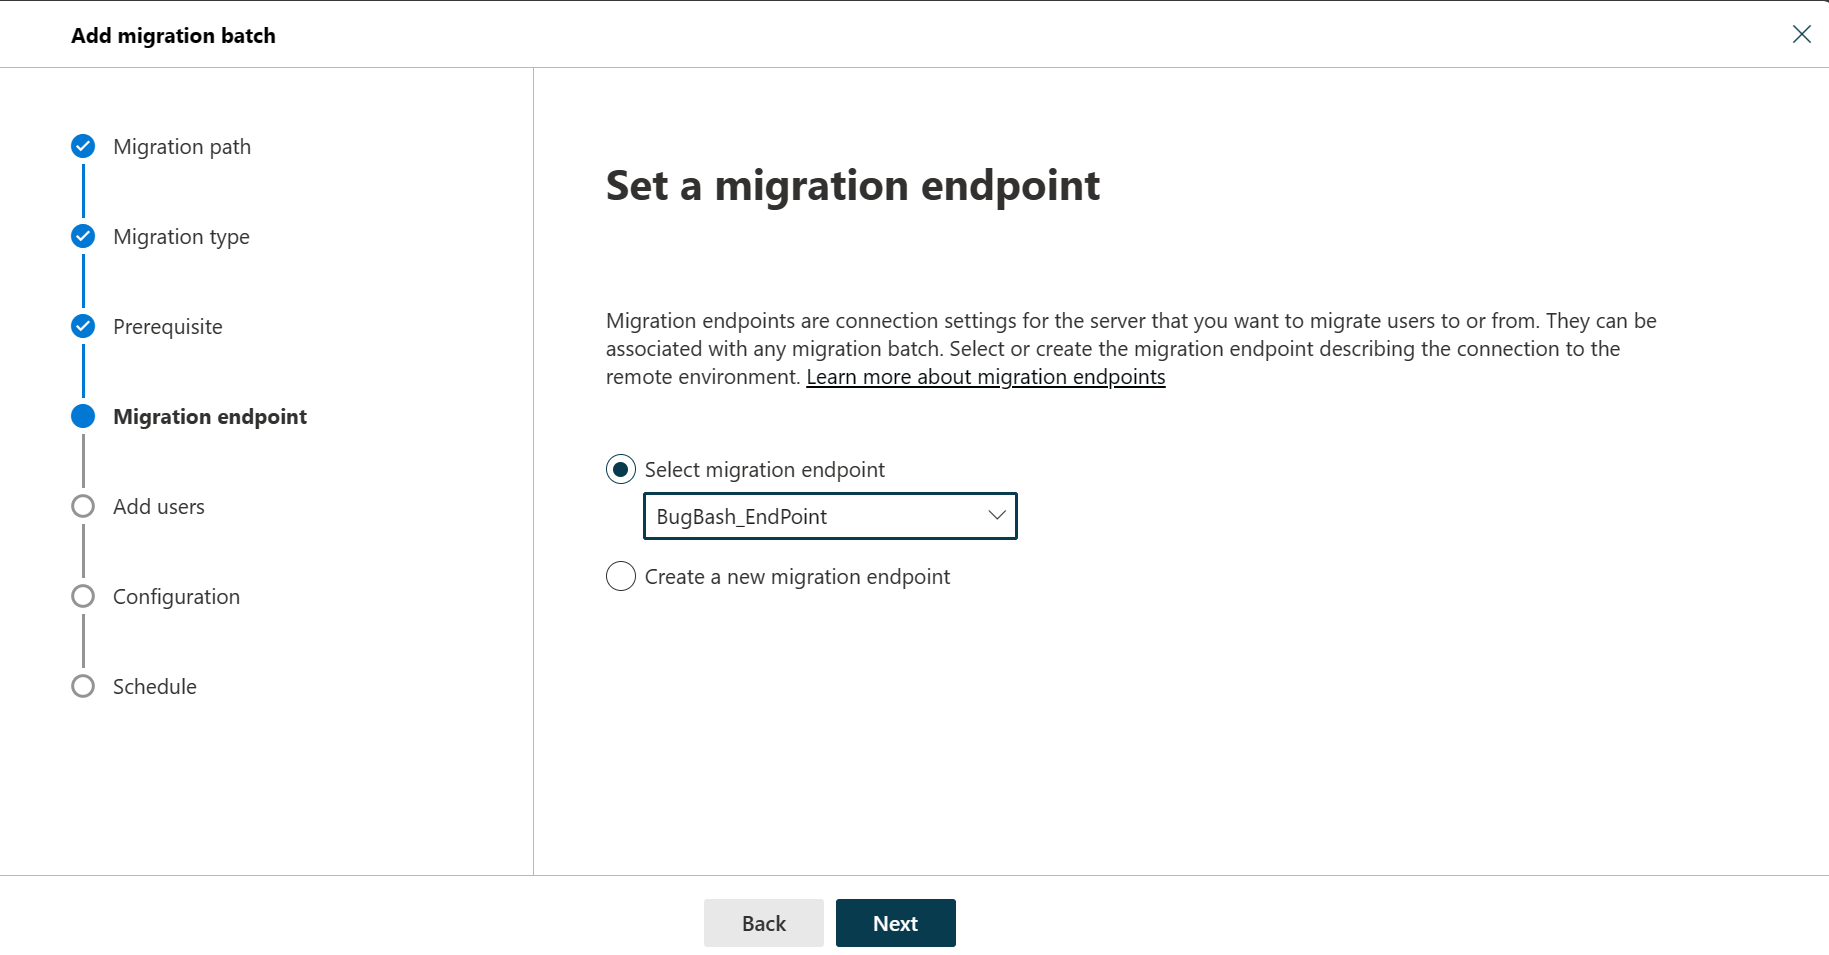 Captura de pantalla del cuadro de diálogo Establecer punto de conexión de migración donde el usuario puede seleccionar el punto de conexión de migración o crear un nuevo punto de conexión de migración, con la opción Seleccionar punto de conexión de migración seleccionada.